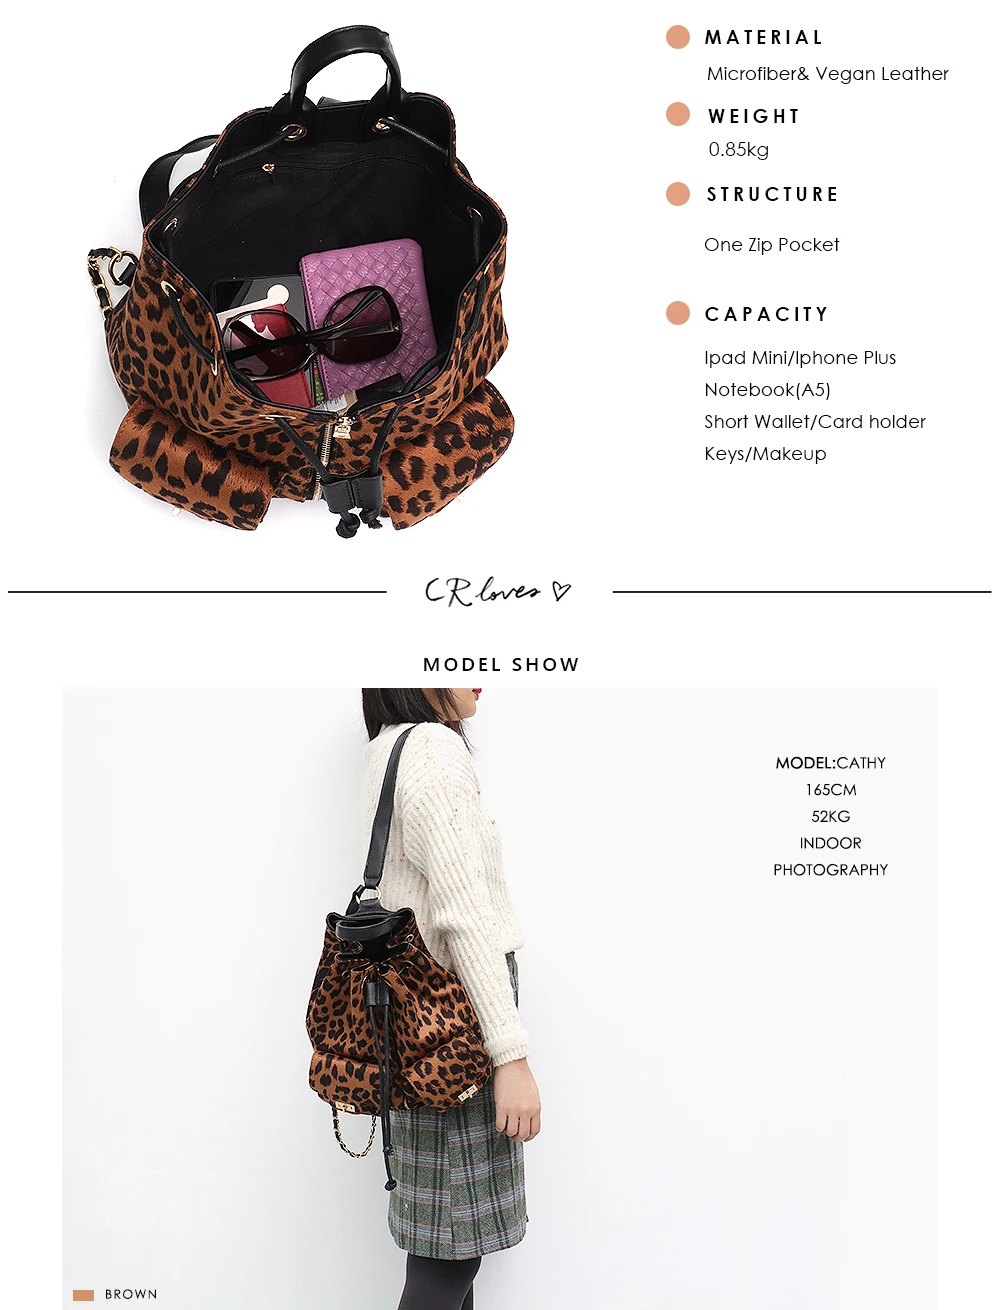 CEZIRA, дизайнерский стиль, женский рюкзак с леопардом, модный школьный рюкзак для девочек, праздничная дорожная сумка, рюкзаки на плечо на шнурке